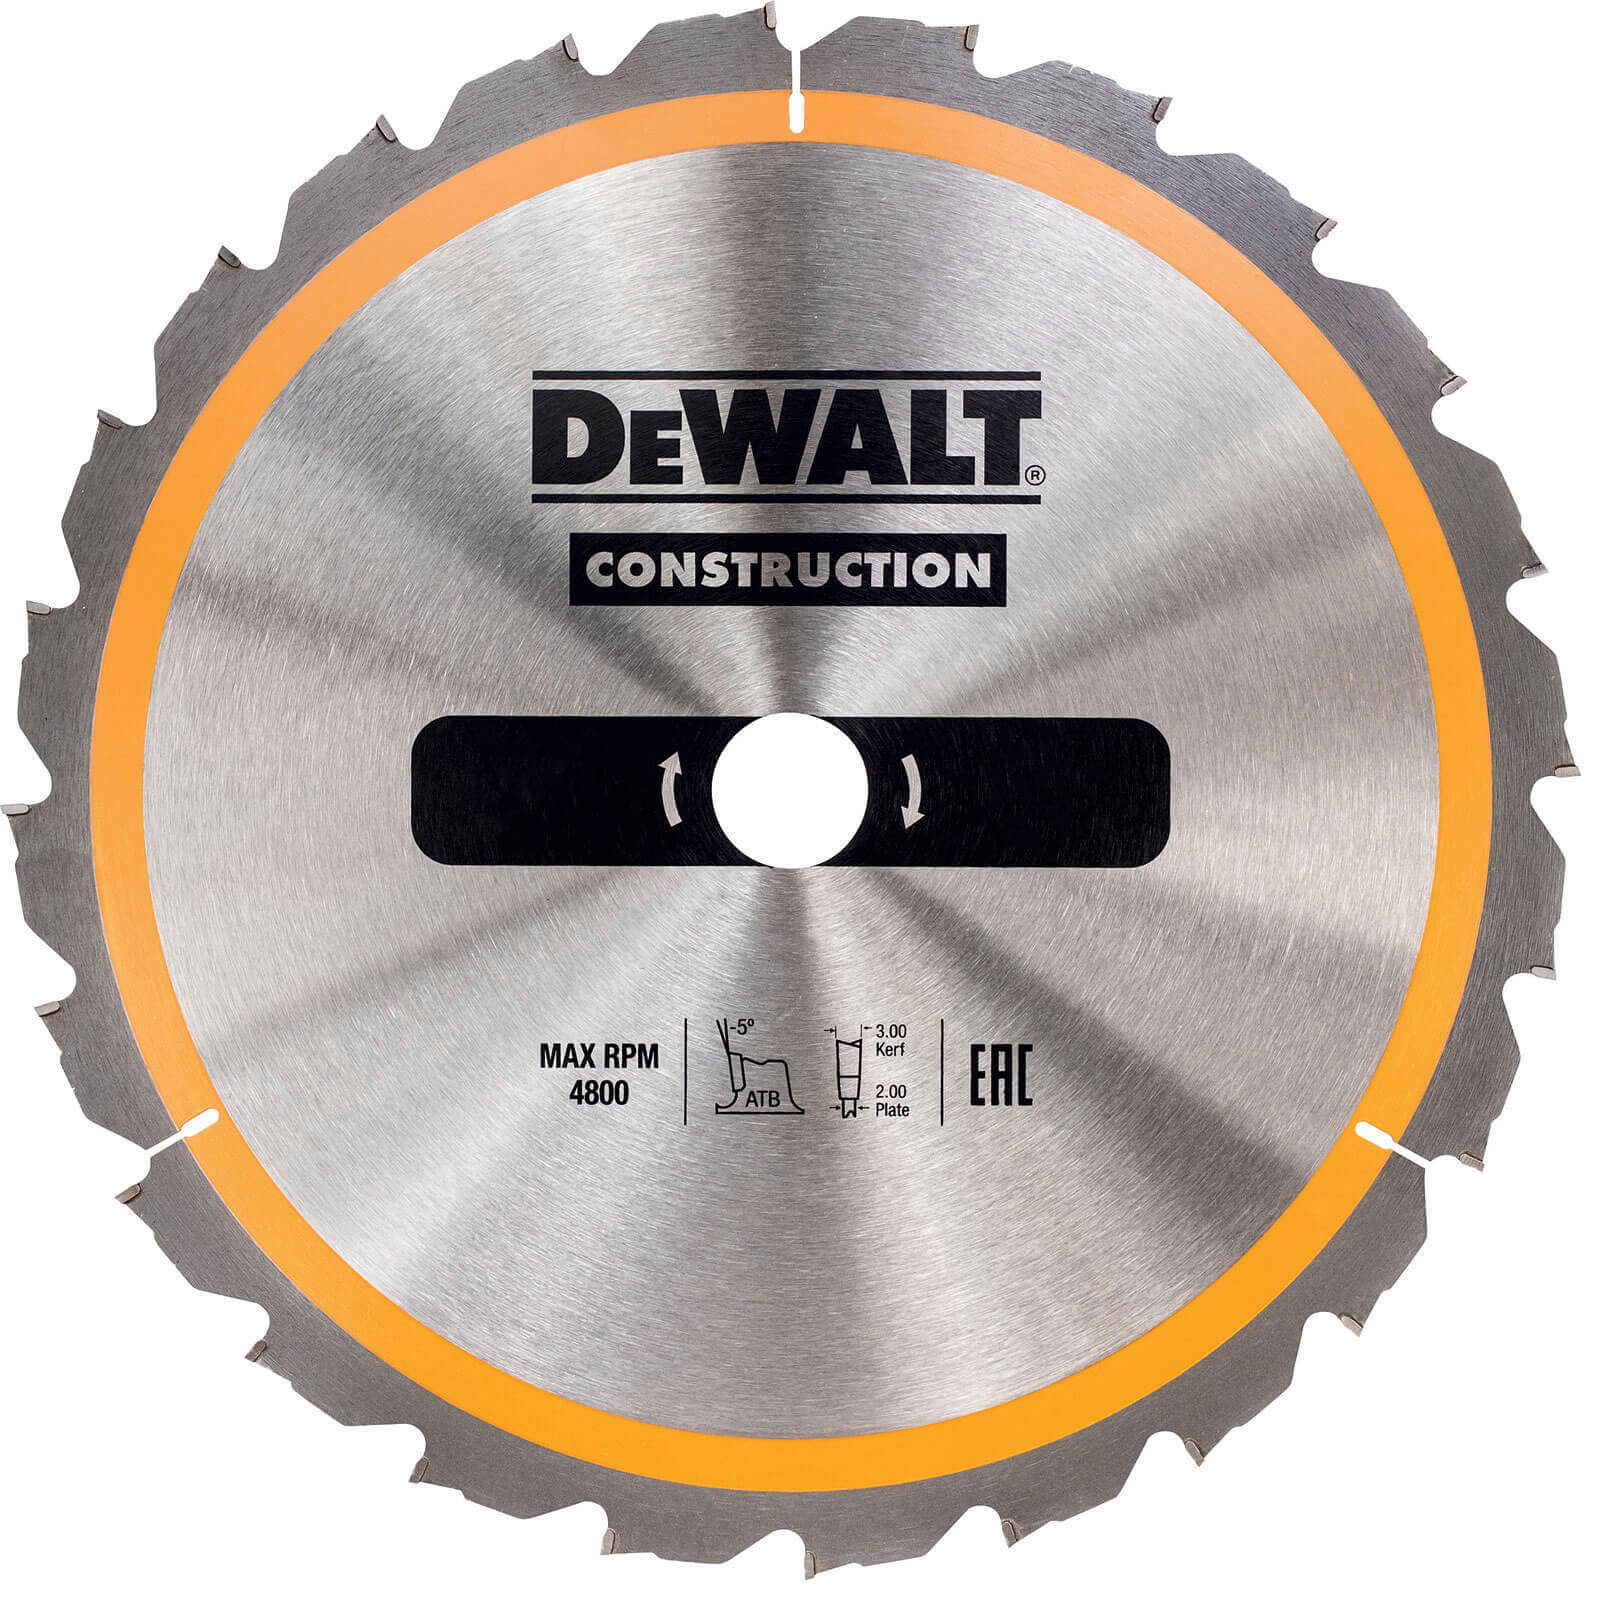 Photo of Dewalt Construction Circular Saw Blade 165mm 36t 20mm